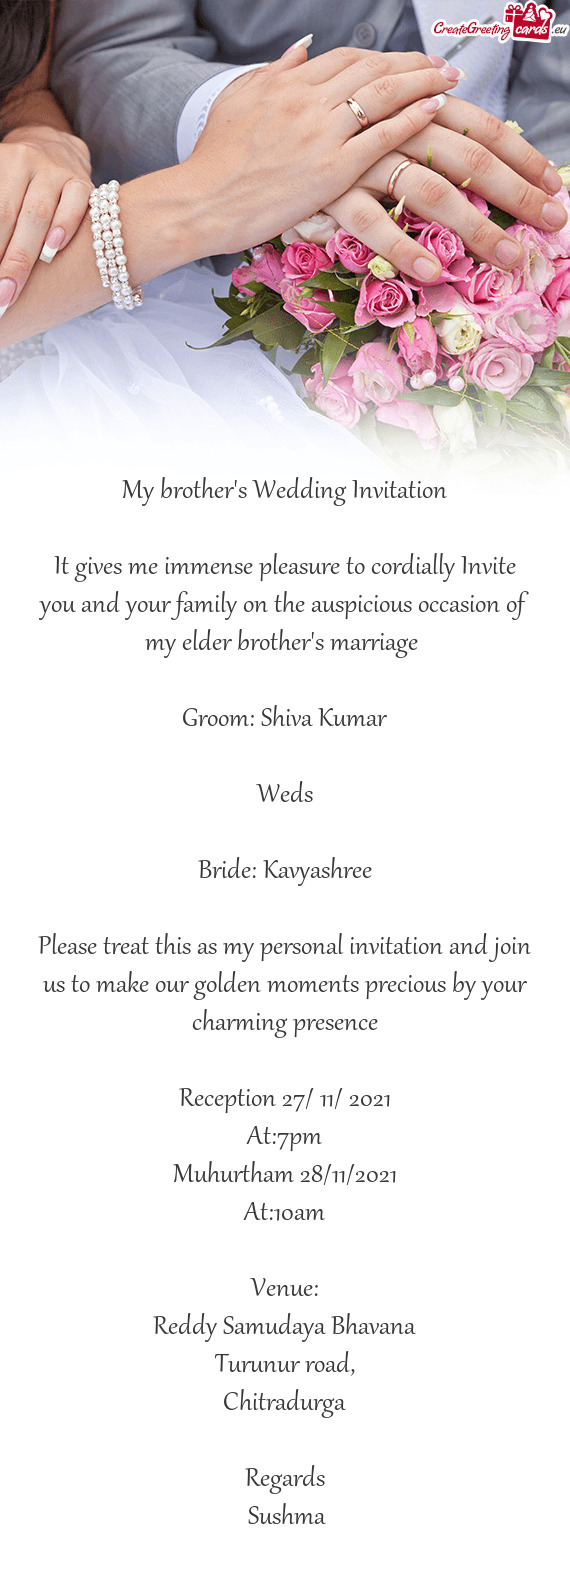 Bride: Kavyashree